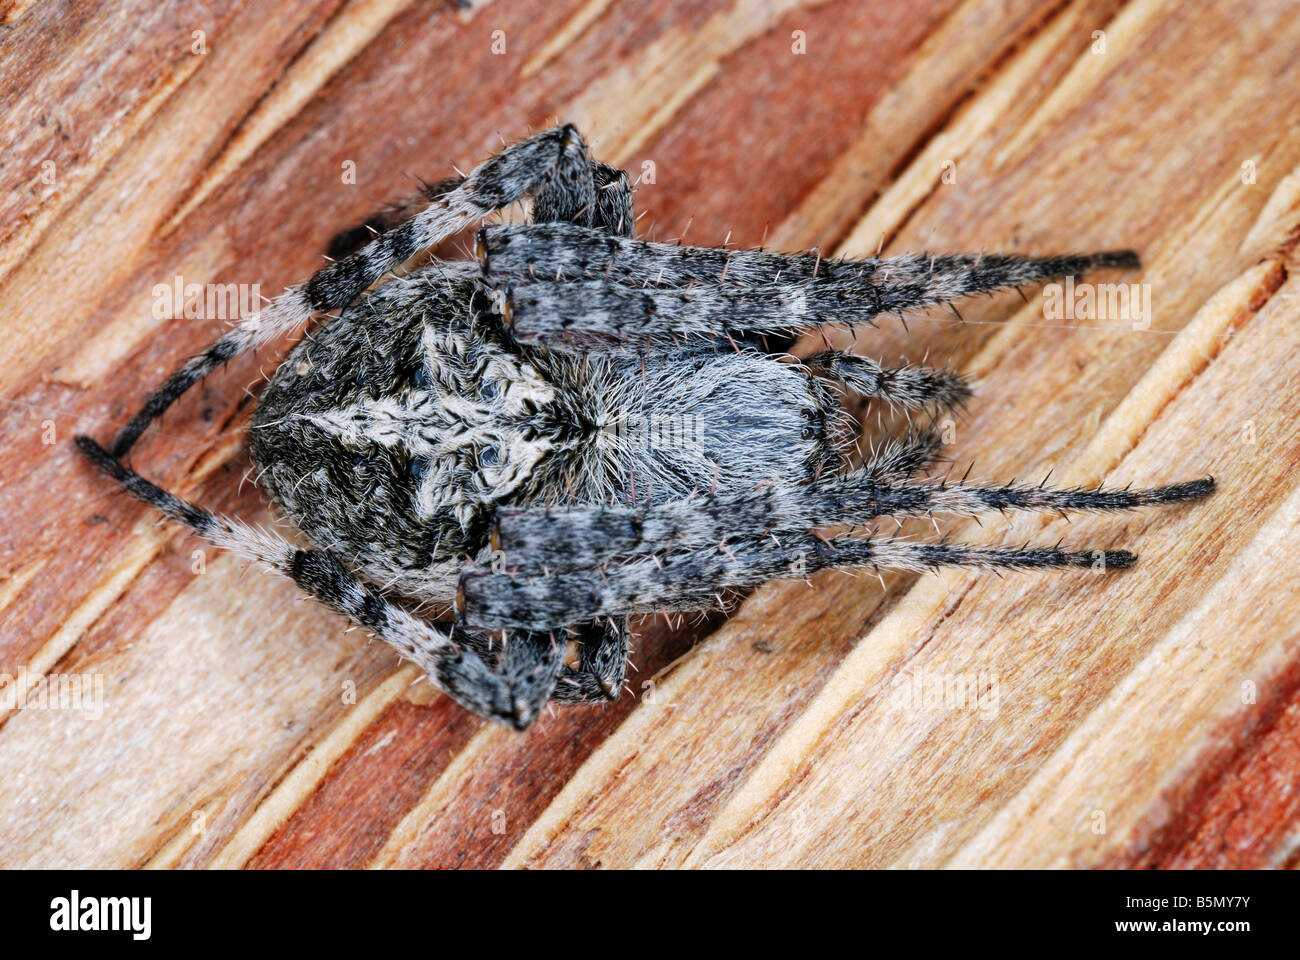 Neoscona Arten. eine Spinne auf ihr Netz in einem Felsen Riss gefunden. Arunachal Pradesh. Indien Stockfoto